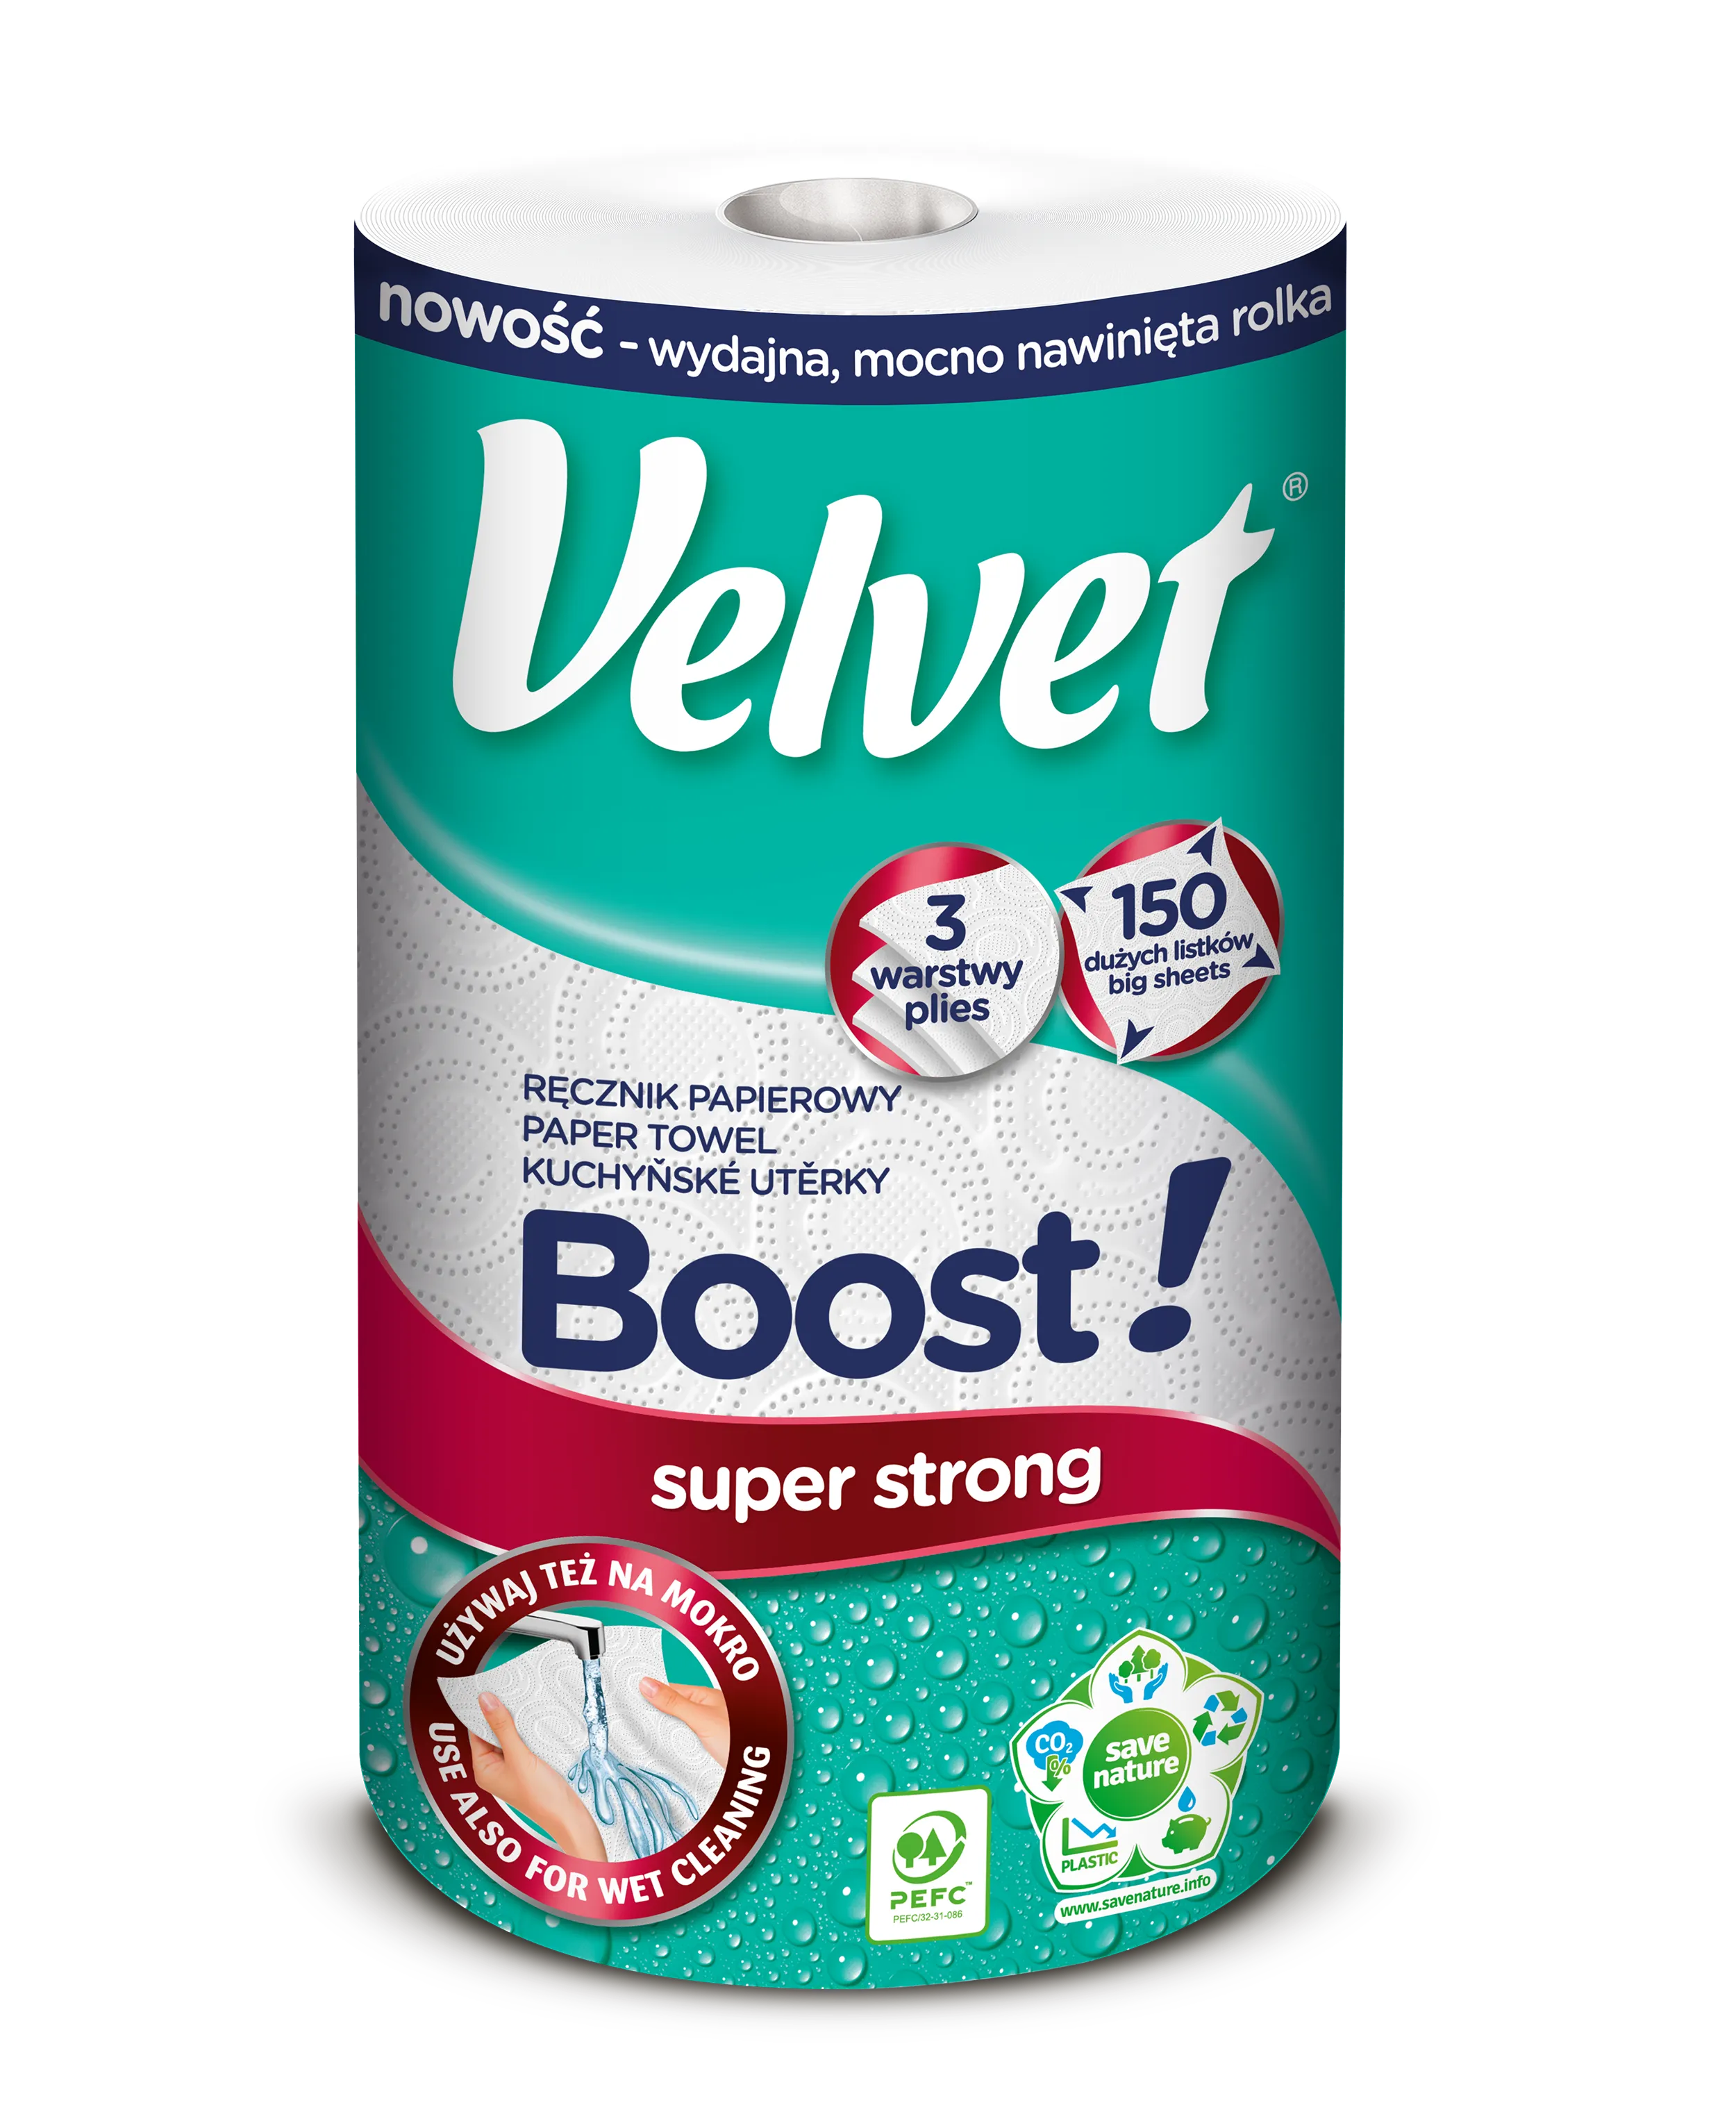 Velvet Boost Super Strong ręcznik papierowy, 1 szt.